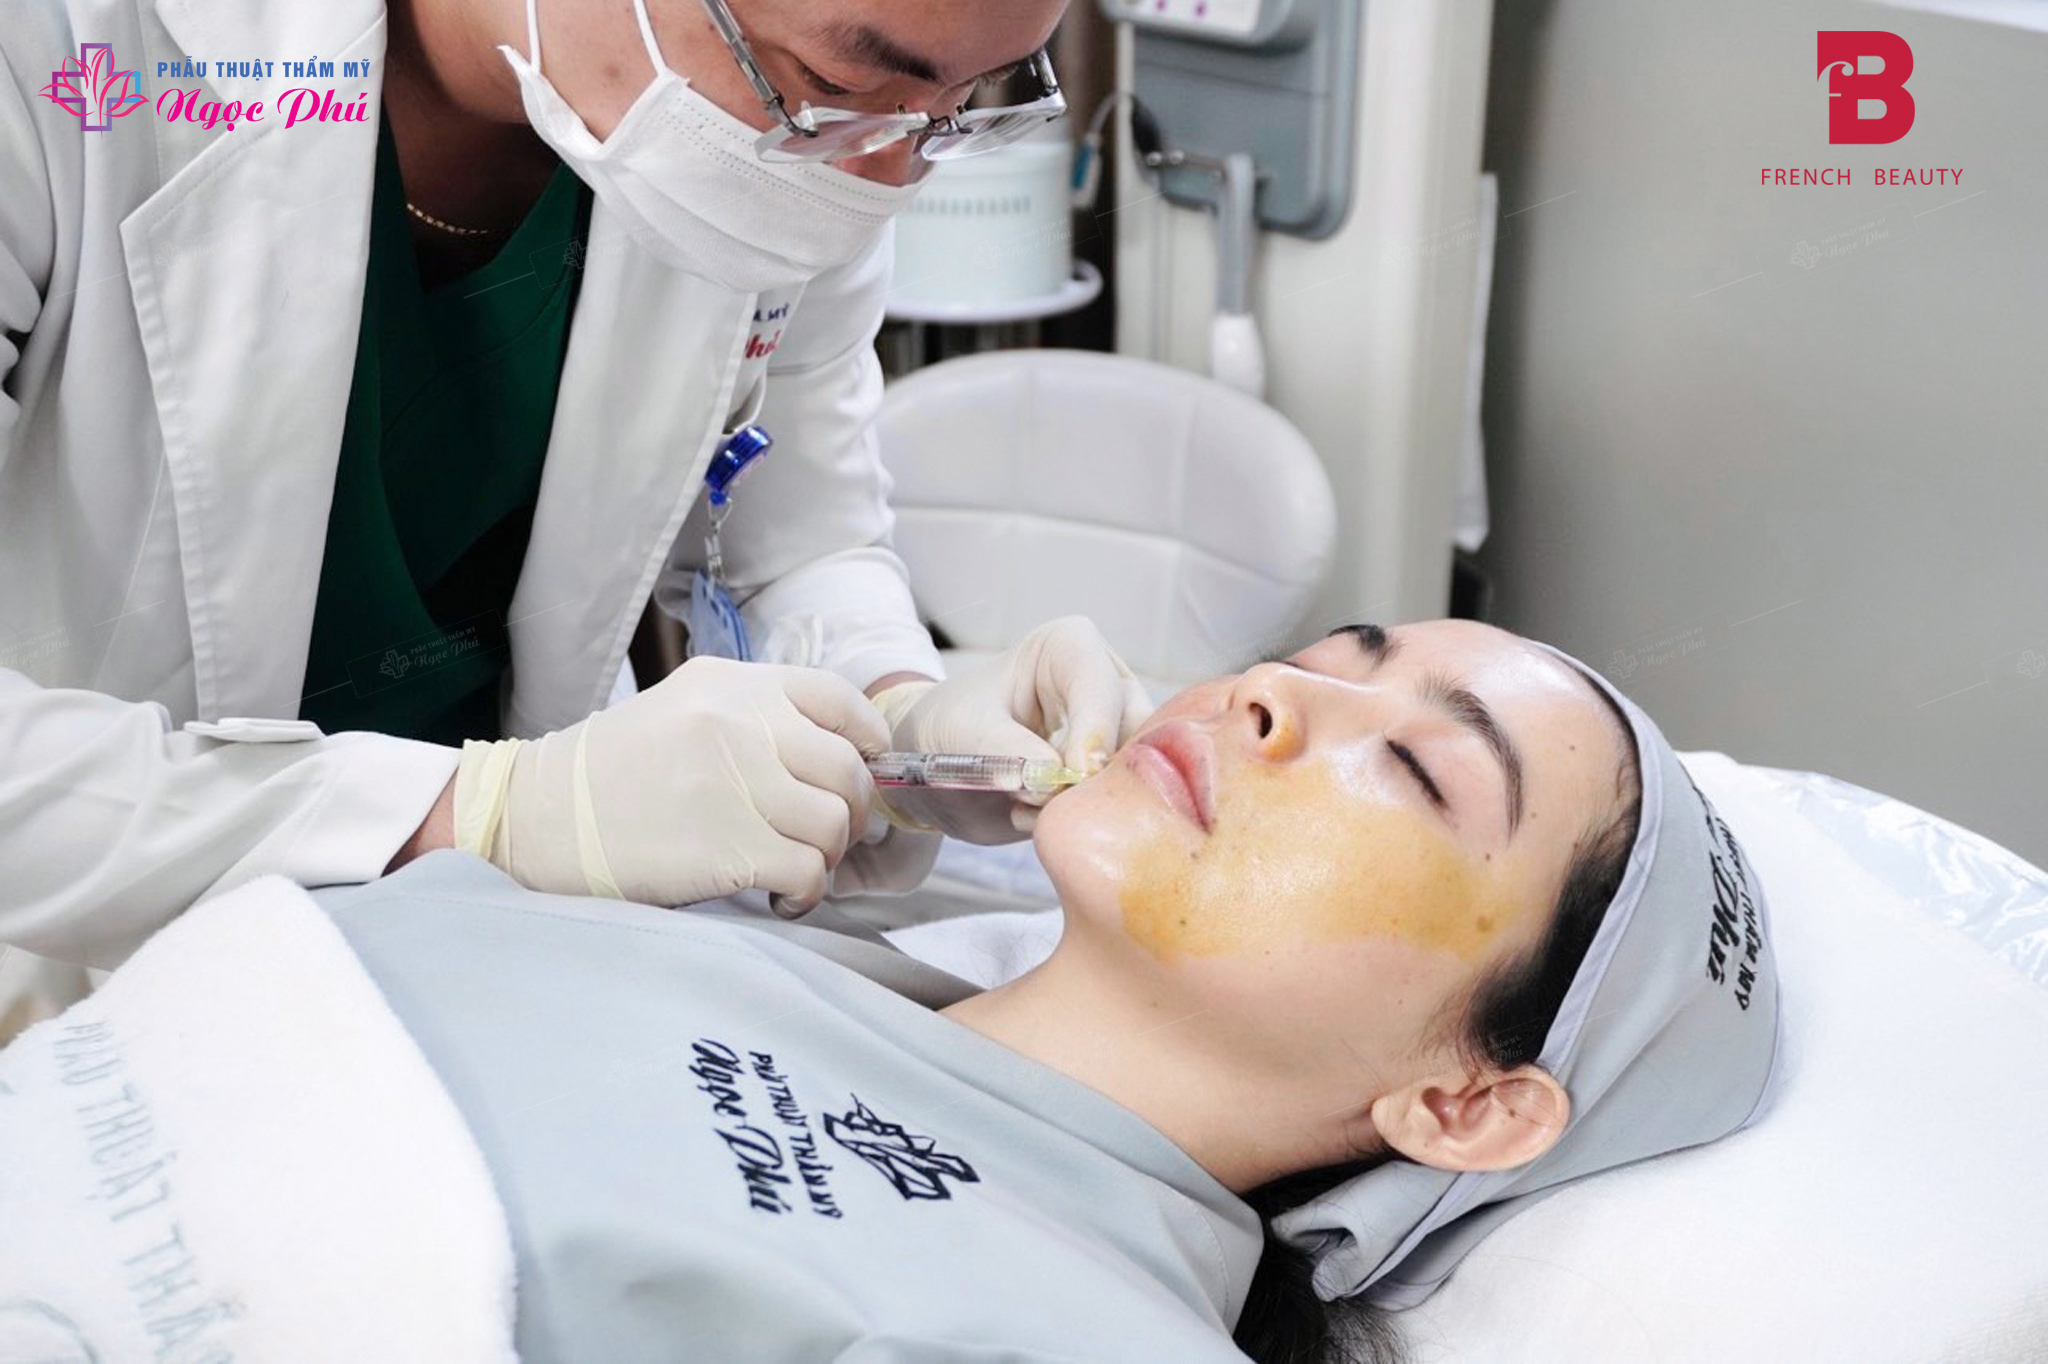 Căng da mặt không phẫu thuật mang lại độ an toàn cao so với phương pháp căng da mặt bằng phẫu thuật. 